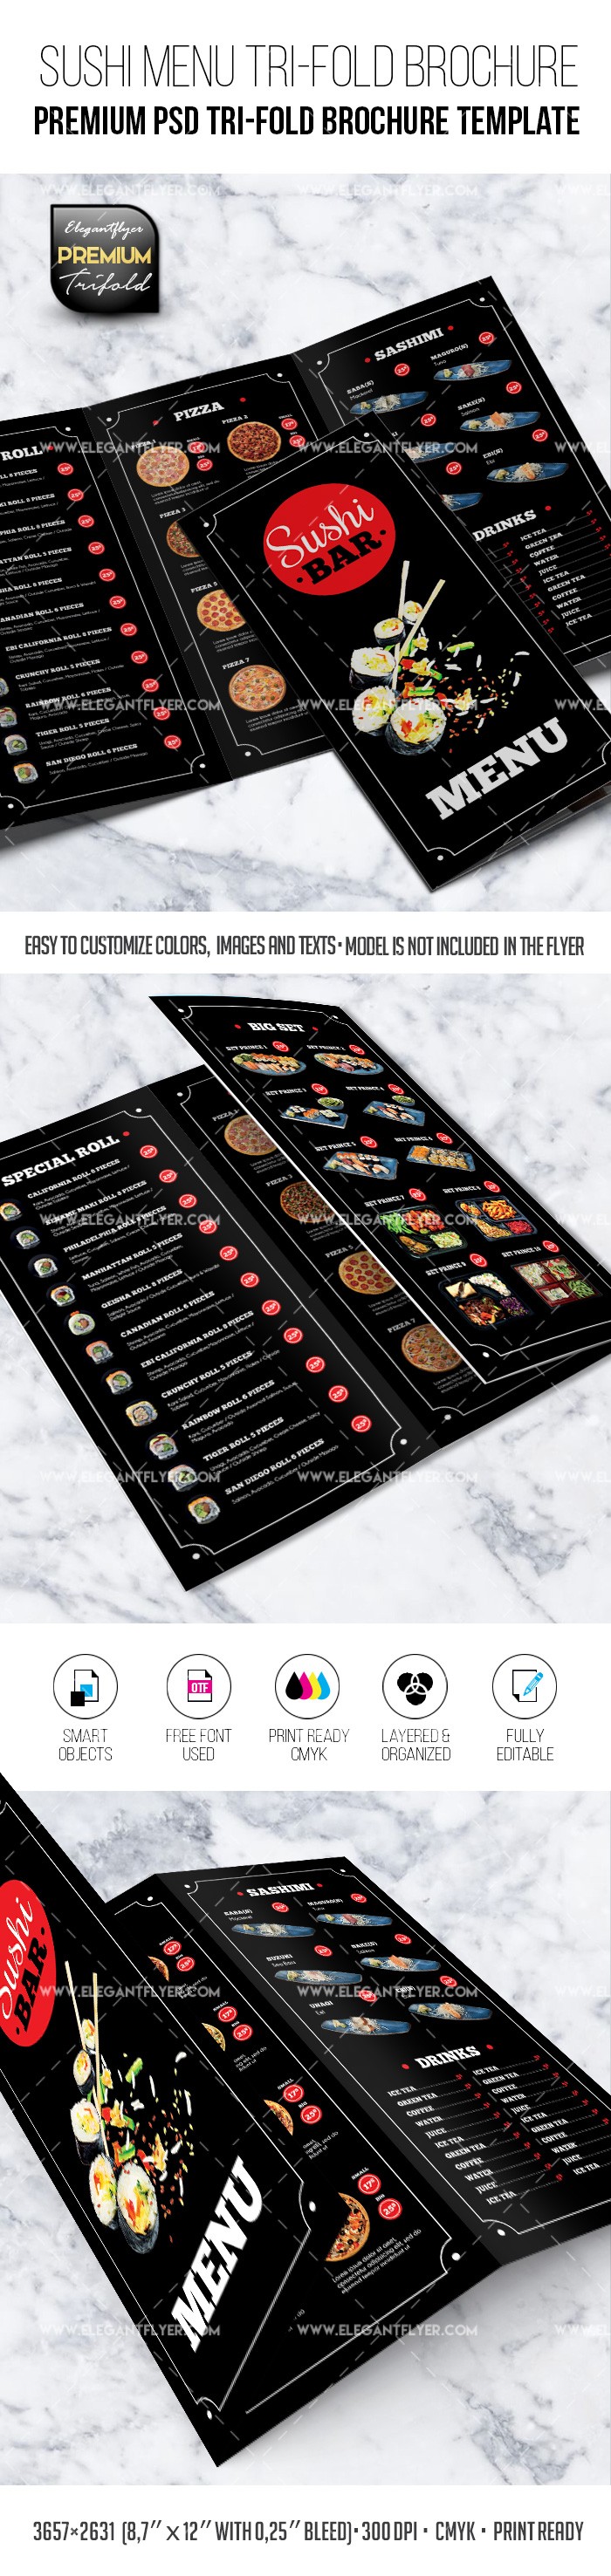 Menú del restaurante de sushi - Plantilla de folleto PSD tríptico Premium. by ElegantFlyer